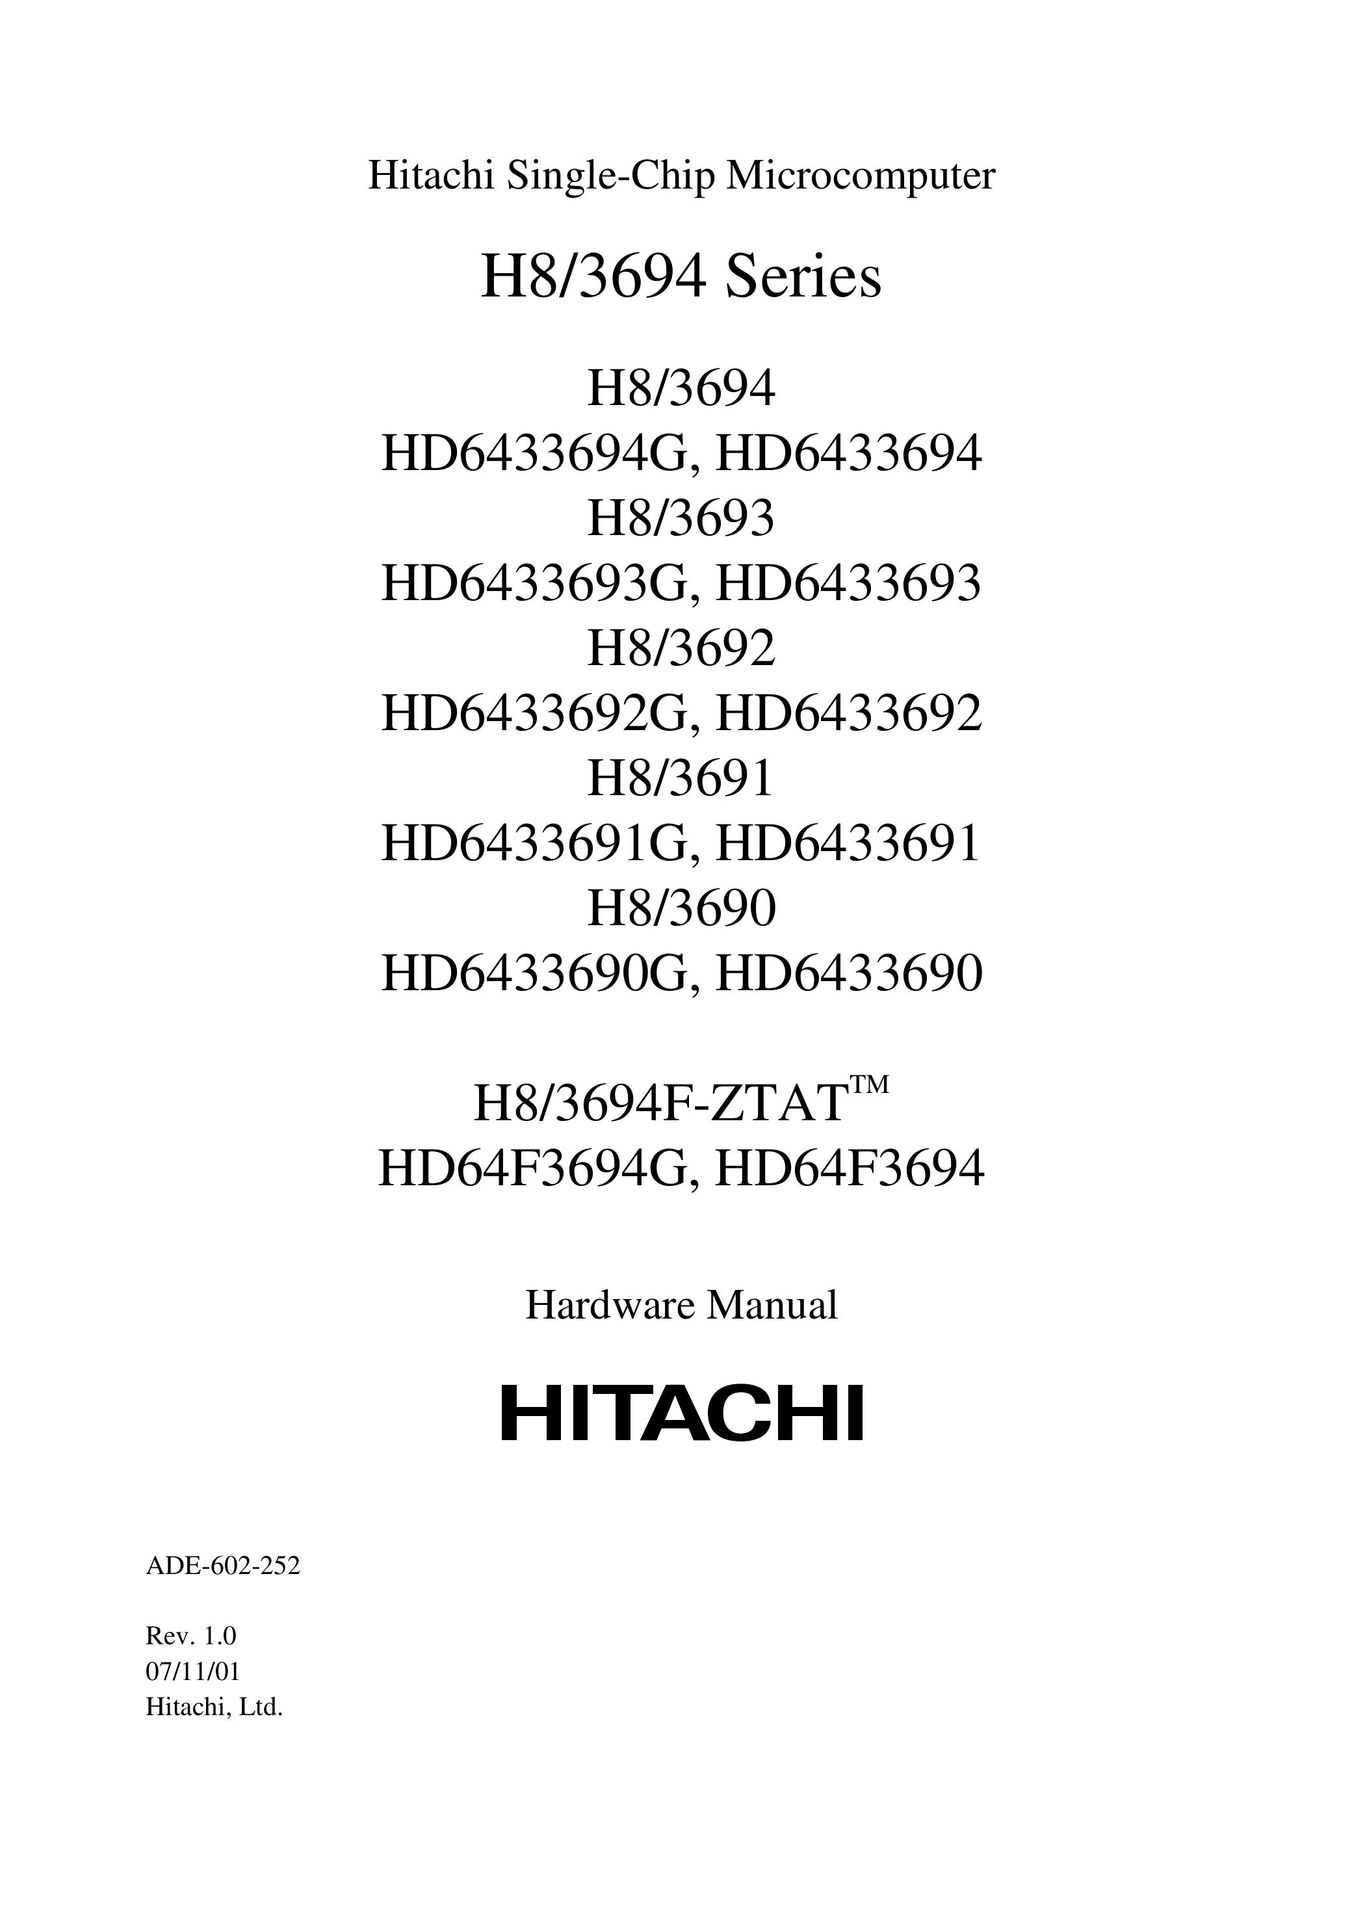 Hitachi H8/3694 TV Mount User Manual